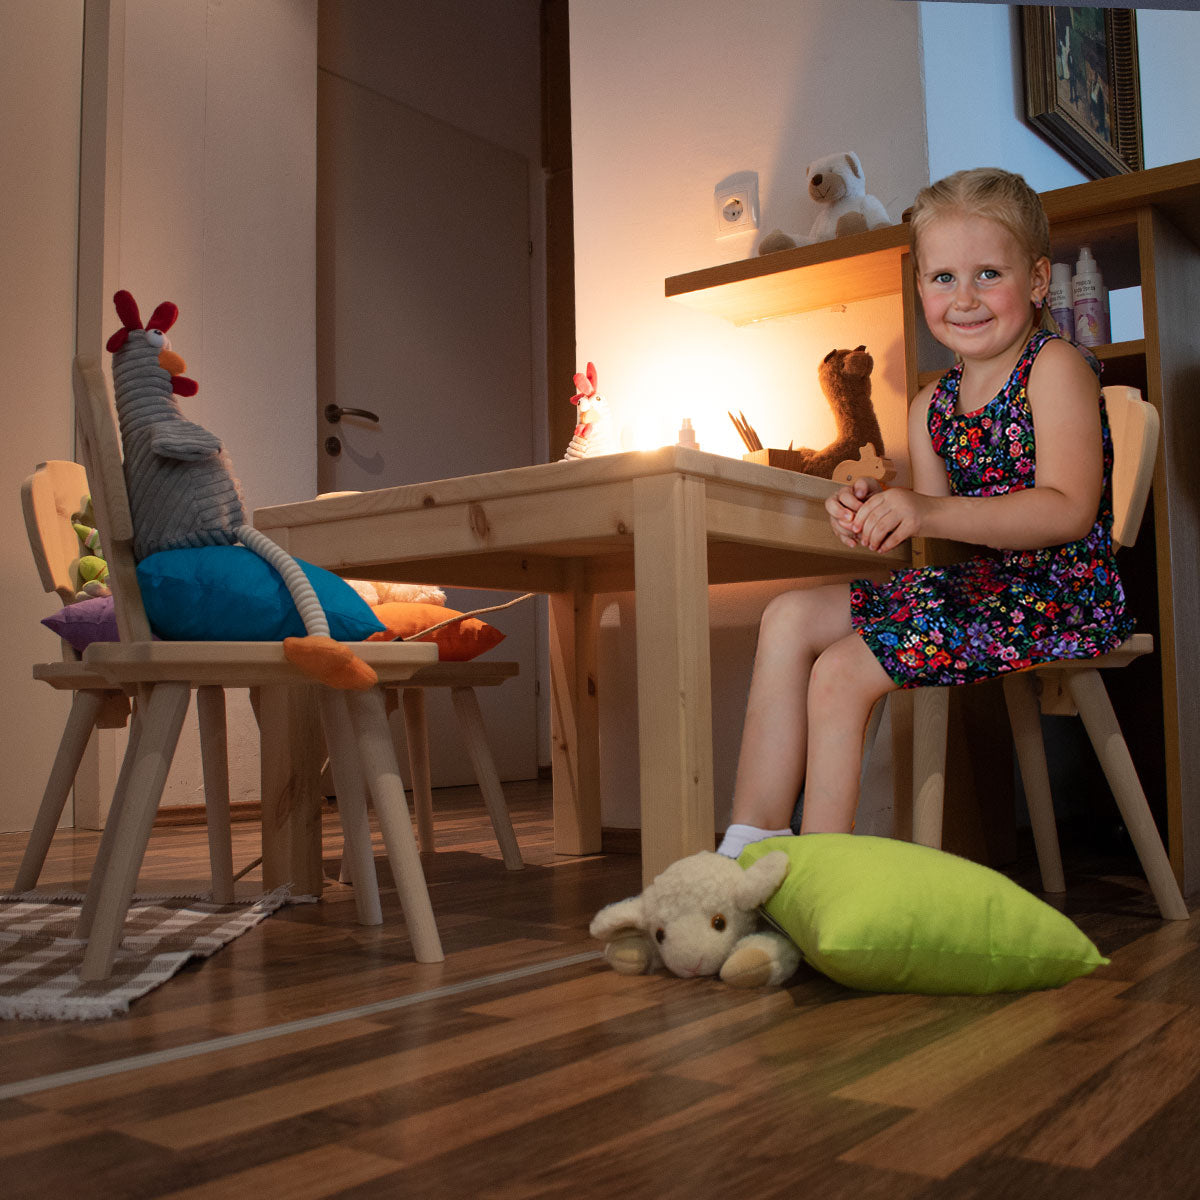 Kindertisch aus Zirbenholz ‘Sweetheart’ | 70 x 70 x 53 cm | Made in Südtirol